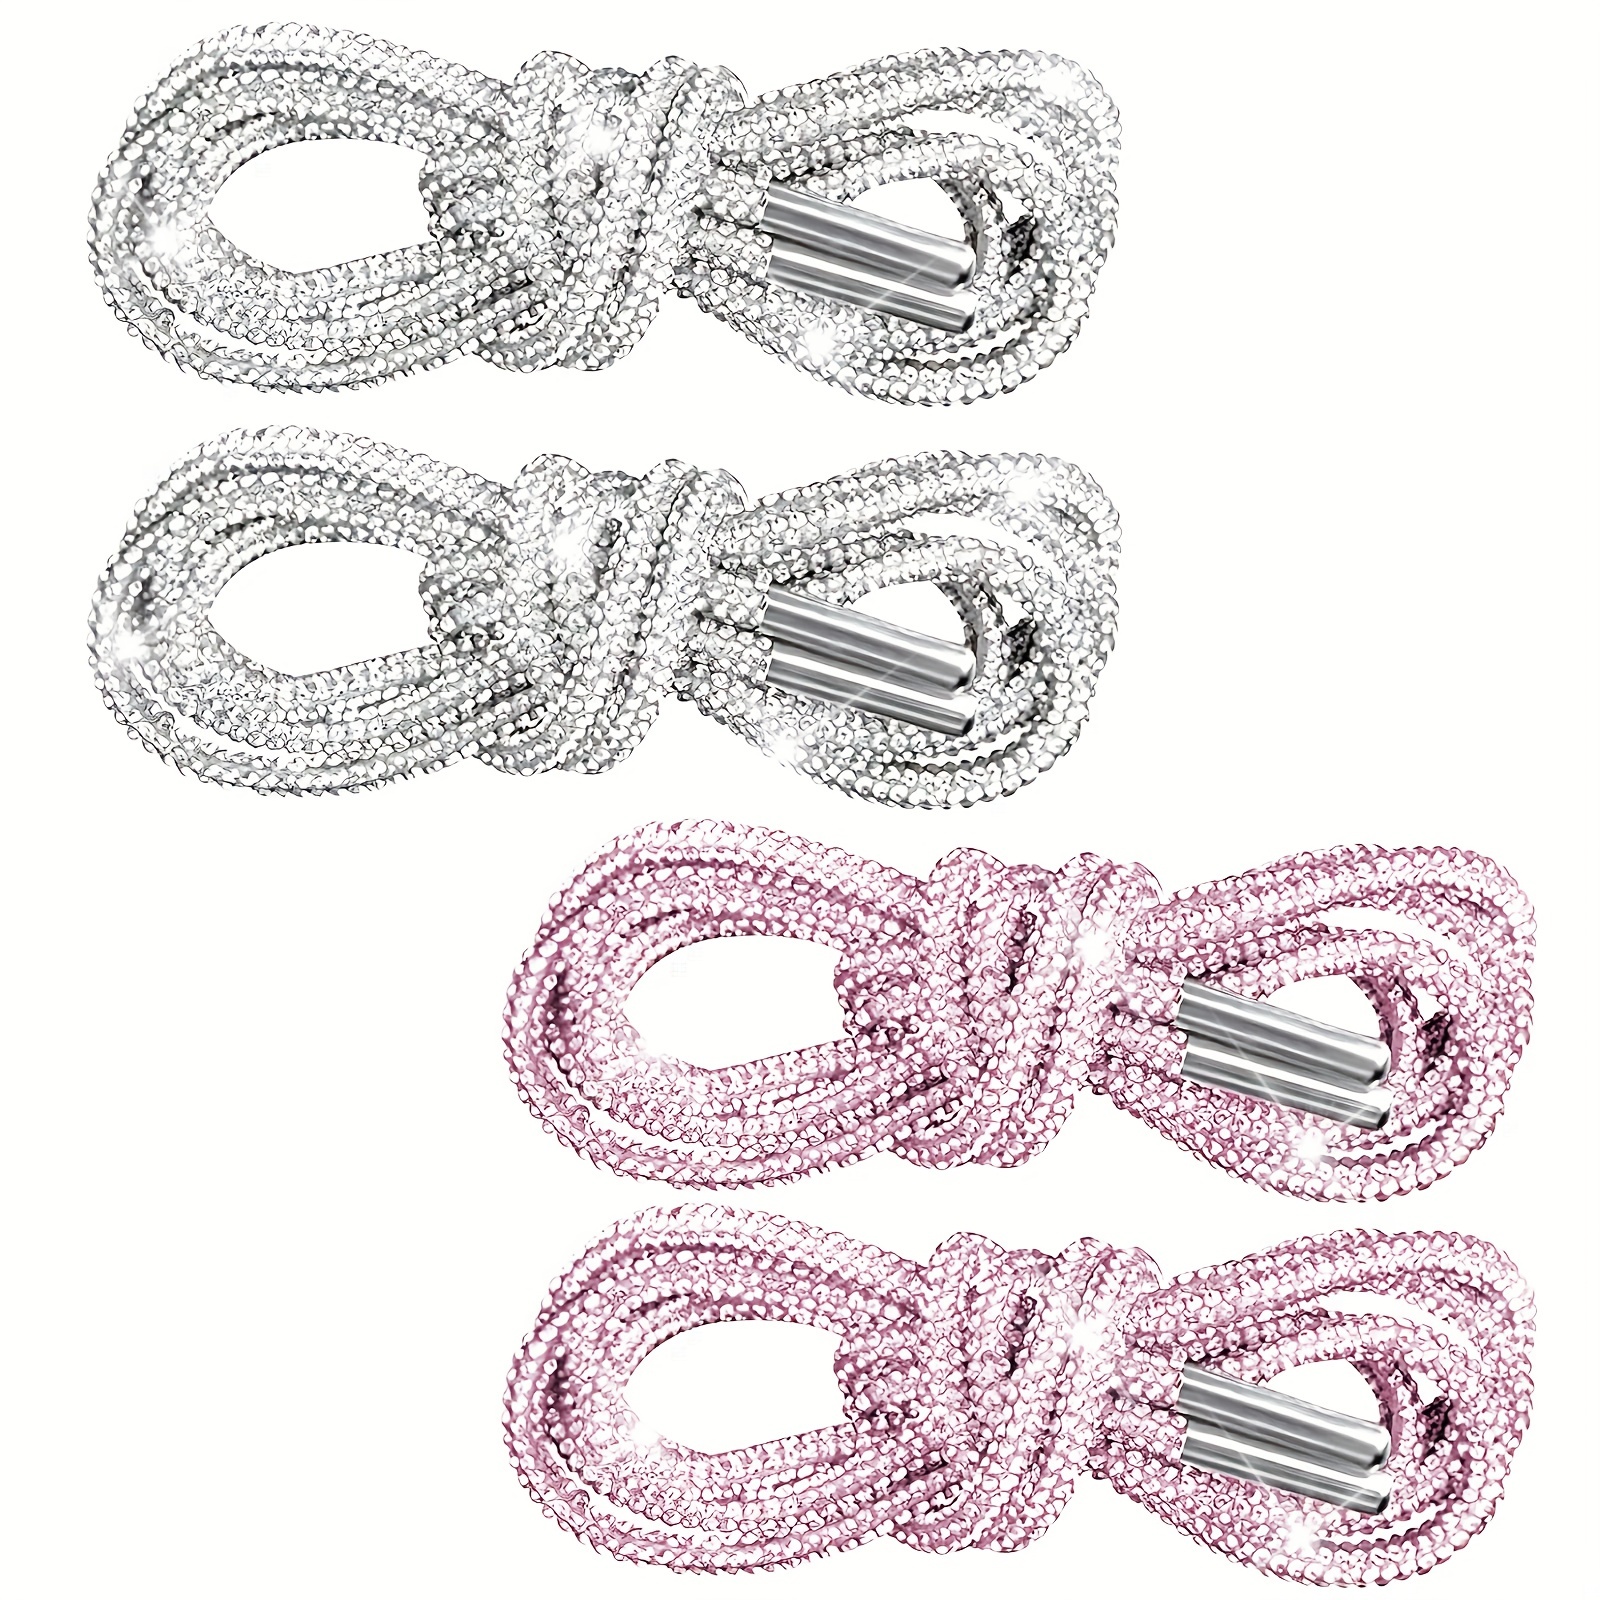 Rhinestone Shoelaces Pink / Shoelace